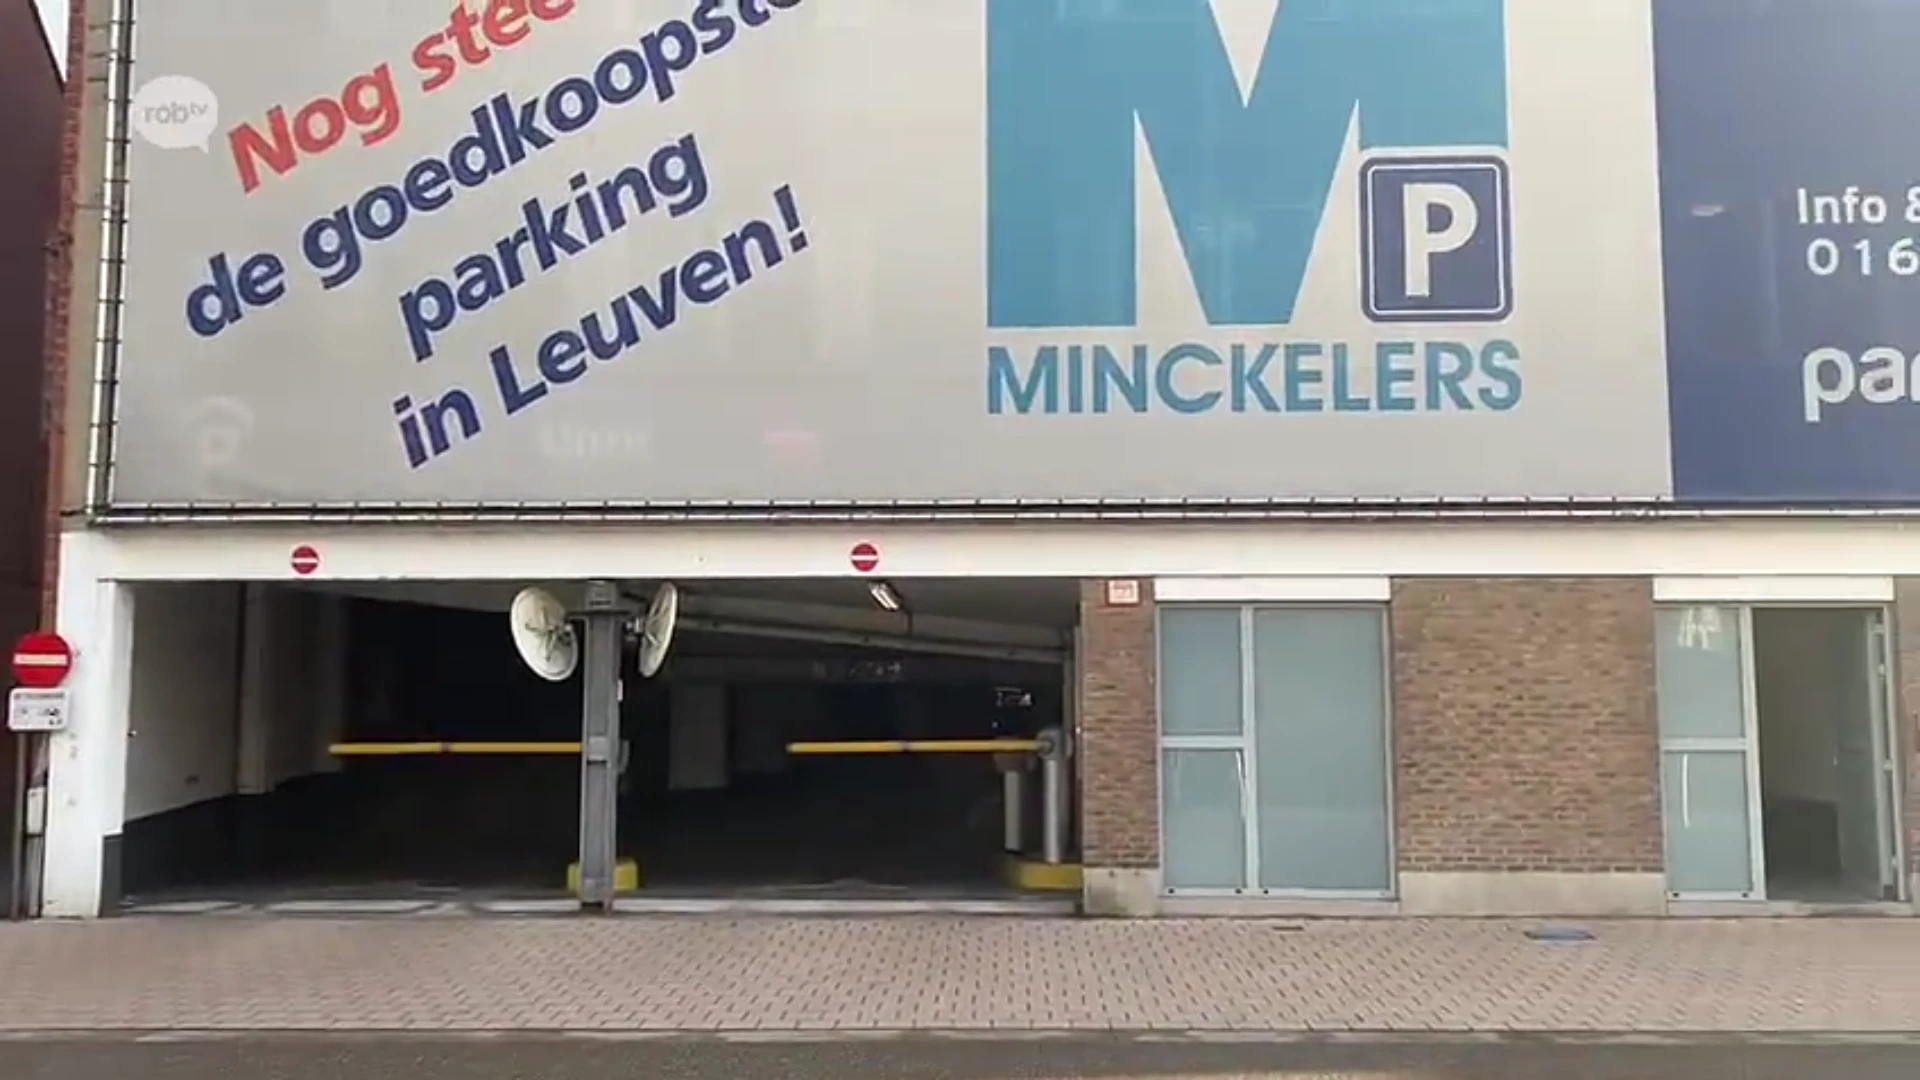 Minckelersparking in Leuven verdwijnt ondergronds en maakt plaats voor duurzame woonwijk